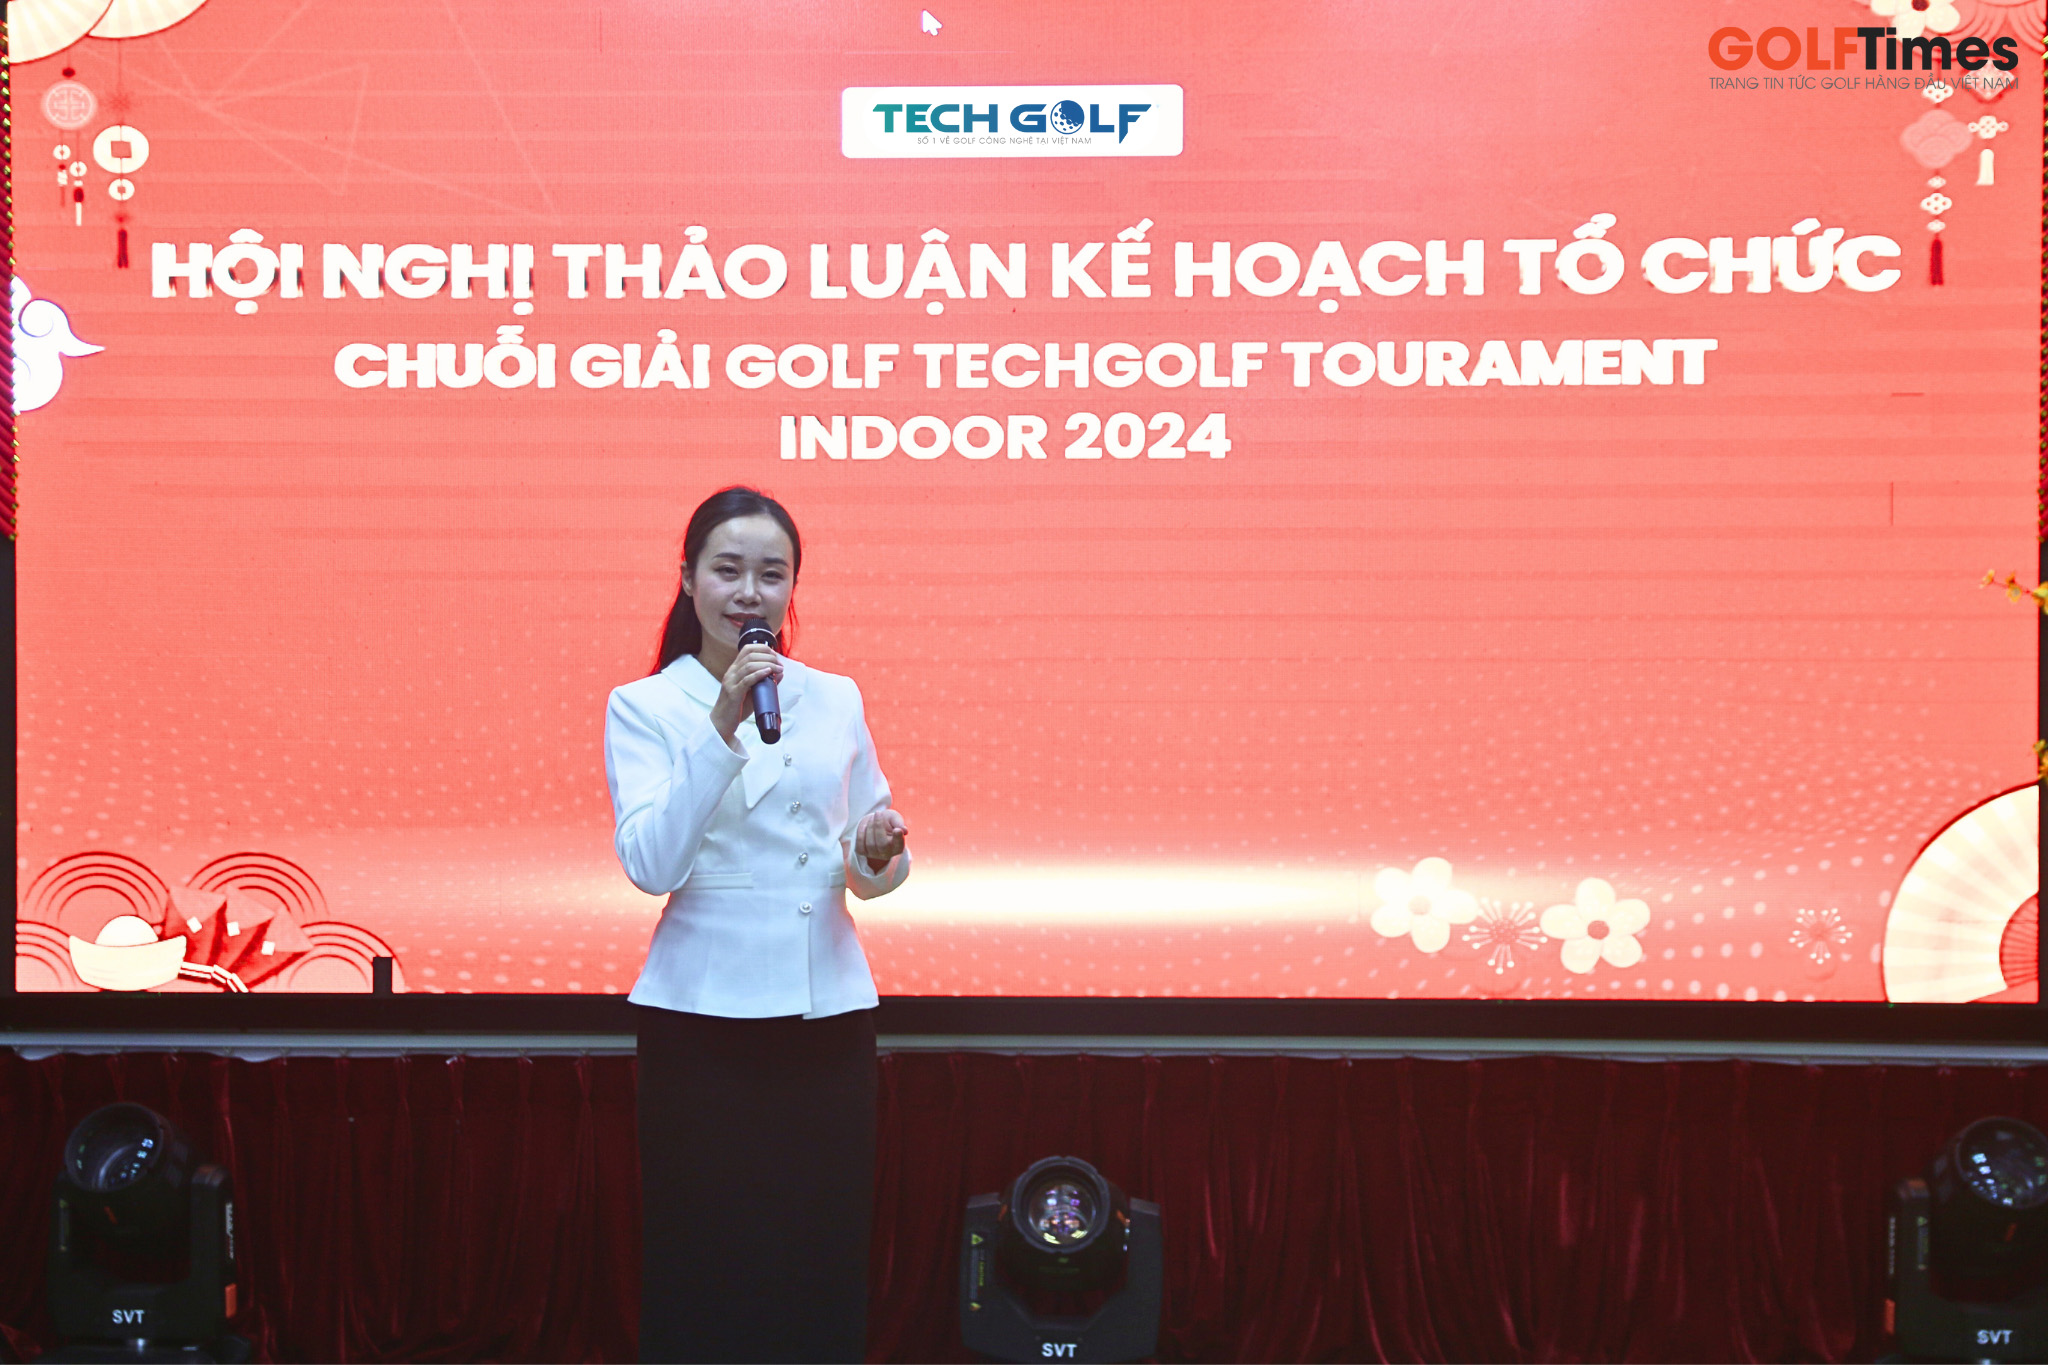 Tổng Giám Đốc Techgolf chia sẻ về kế hoạch tổ chức chuỗi giải golf Techgolf Tournament Indoor 2024